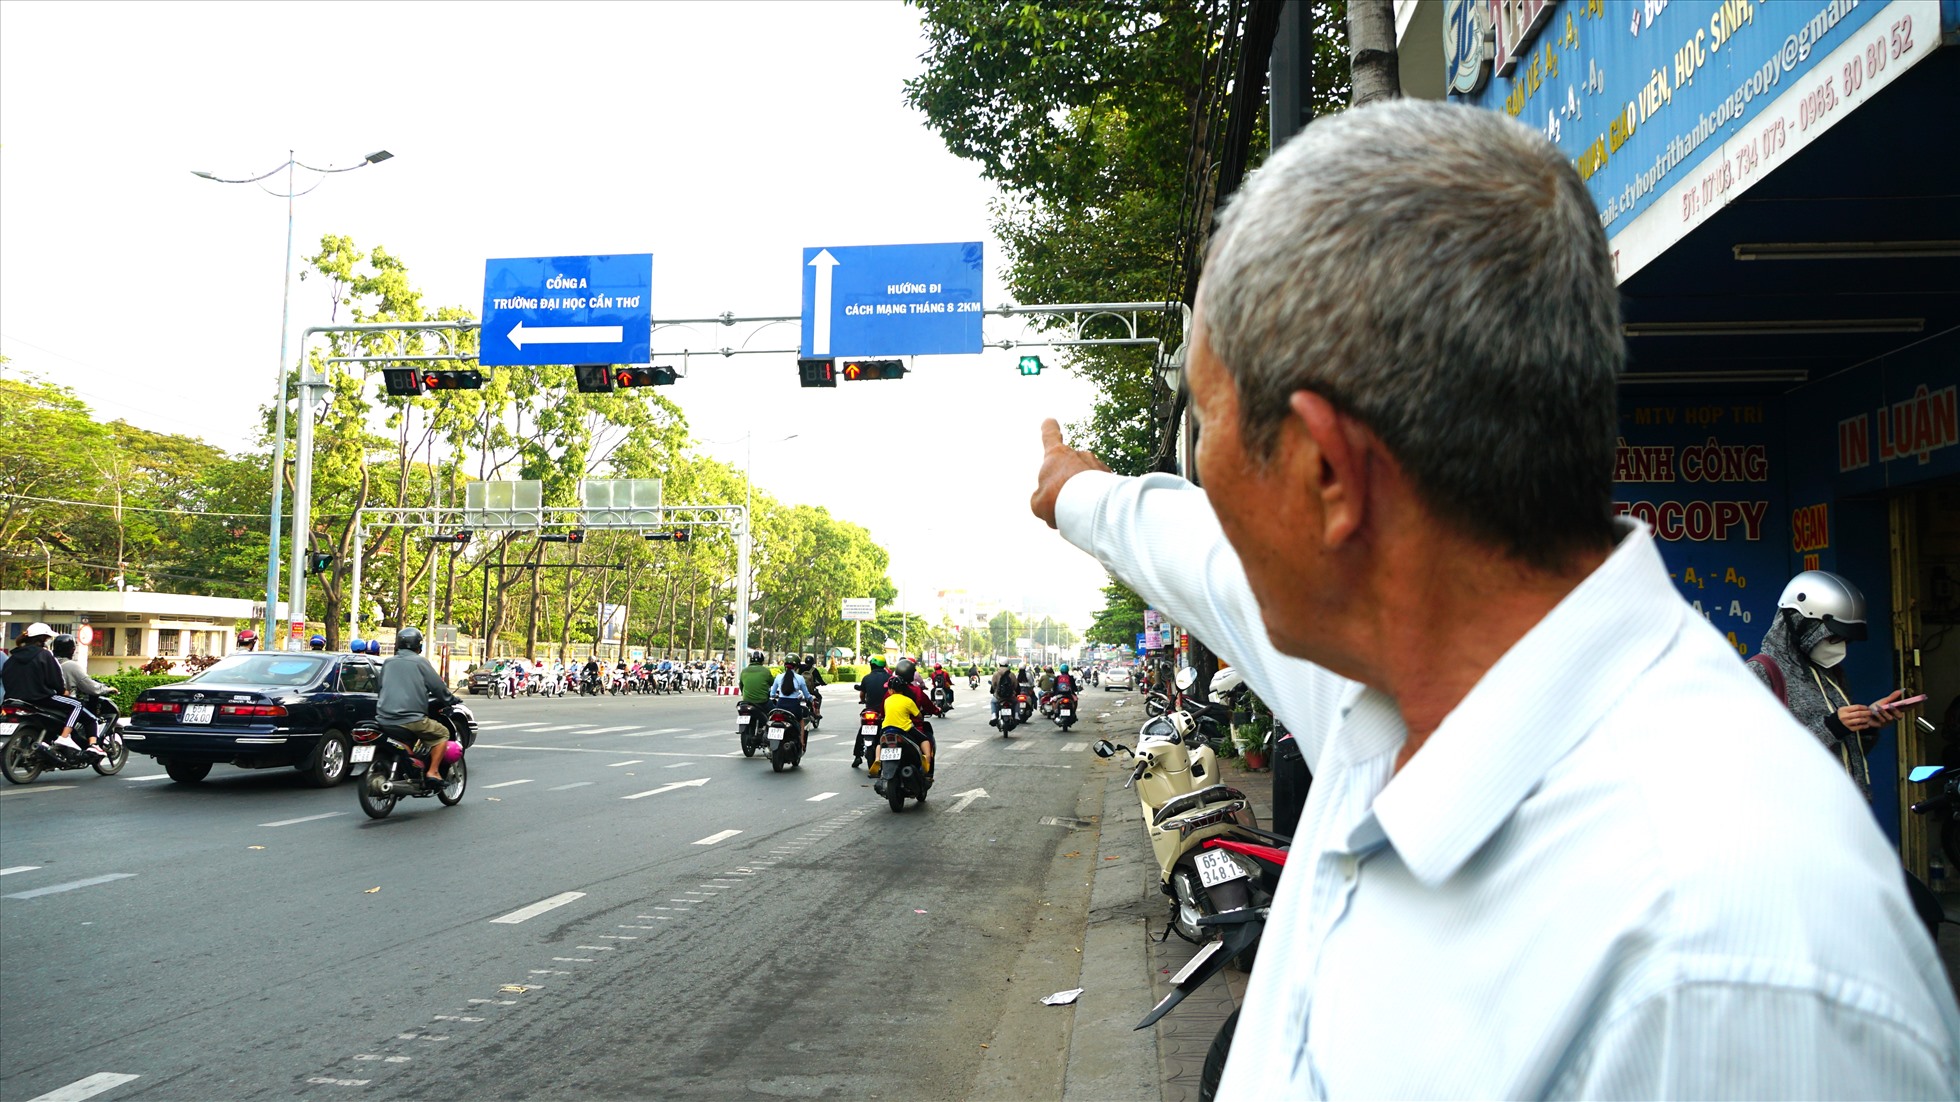 Ông Võ Văn An (64 tuổi, Q. Ninh Kiều, TP. Cần Thơ) chia sẻ, trước đây chưa có đèn tín hiệu giao thông rất nguy hiểm, hầu như ngày nào cũng có va chạm trước cổng trường. Từ lúc có đèn tín hiệu giao thông, các em sinh viên ít xảy ra tai nạn hơn, người dân qua lại cũng được đảm bảo an toàn.